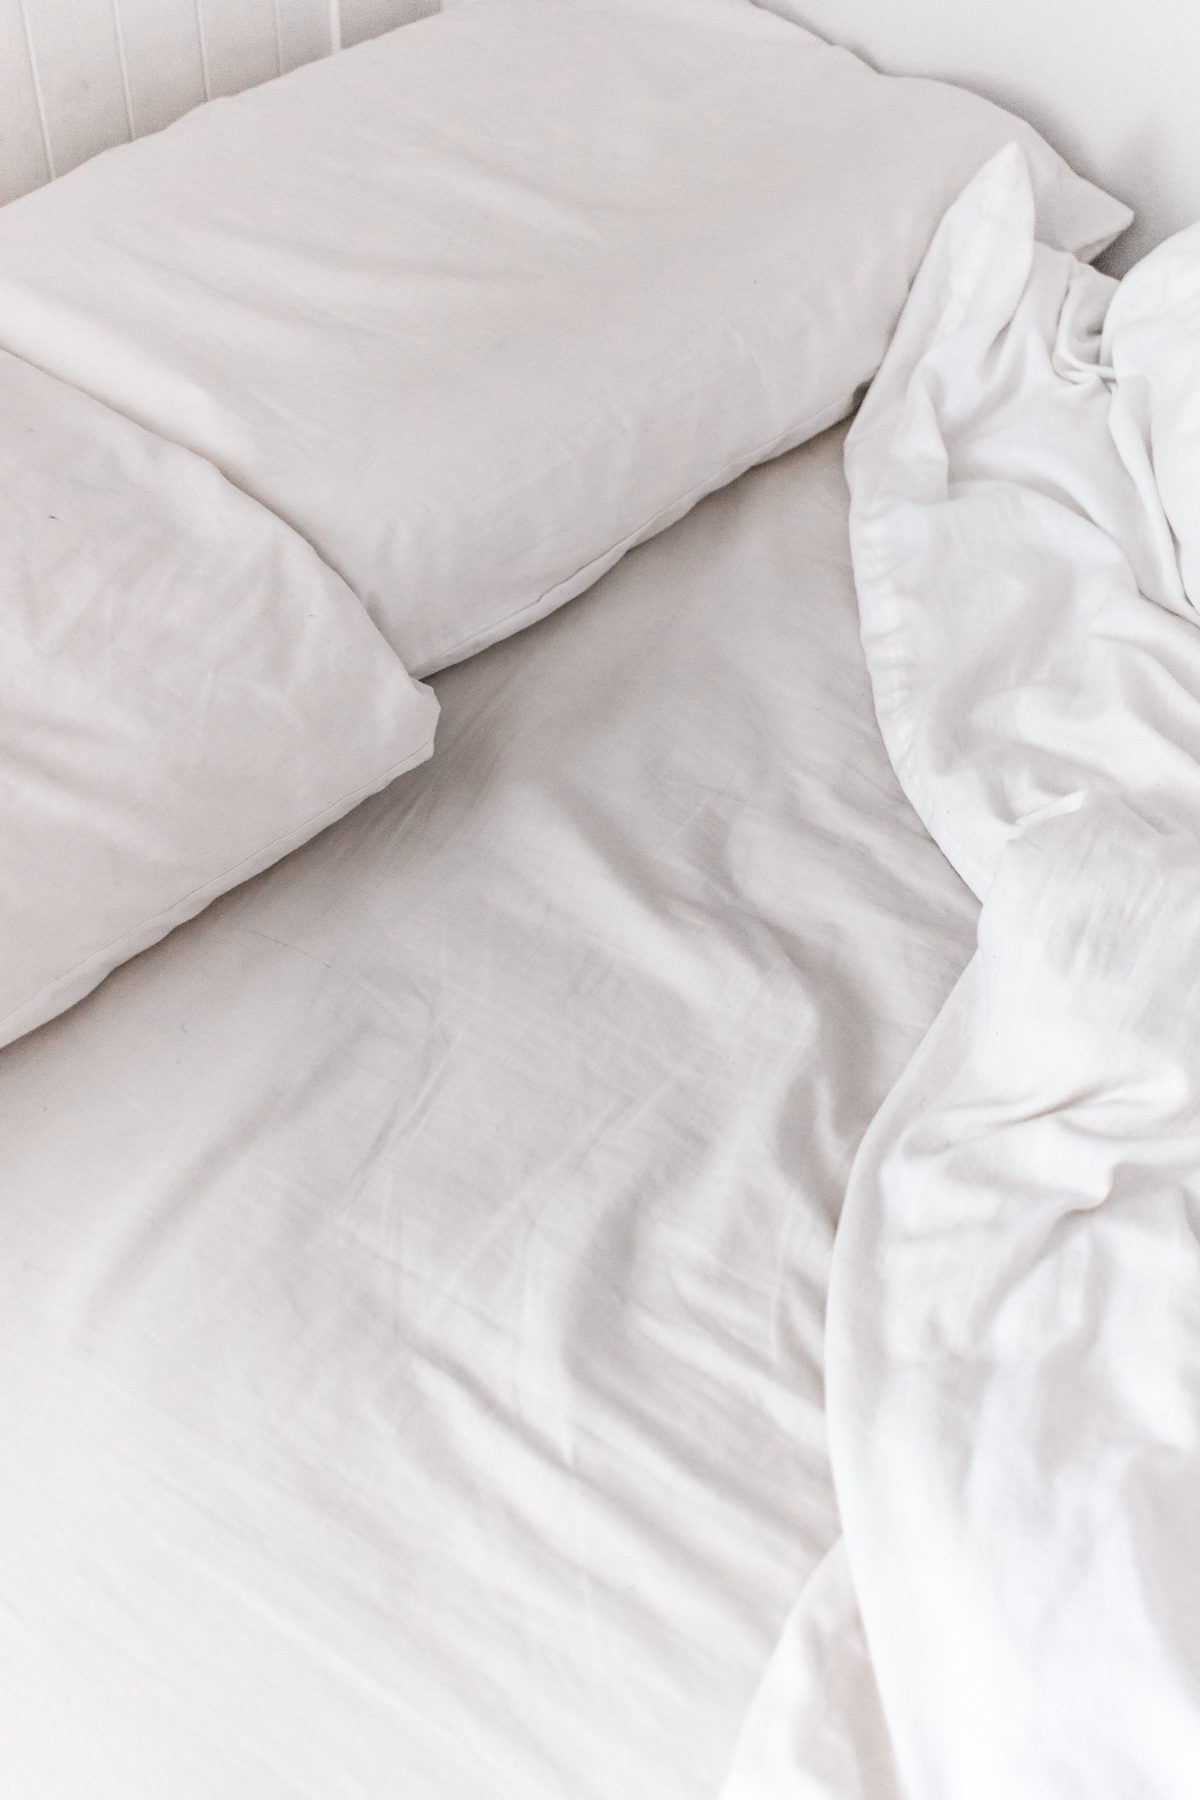 Hårde madrasser og en sundere søvn